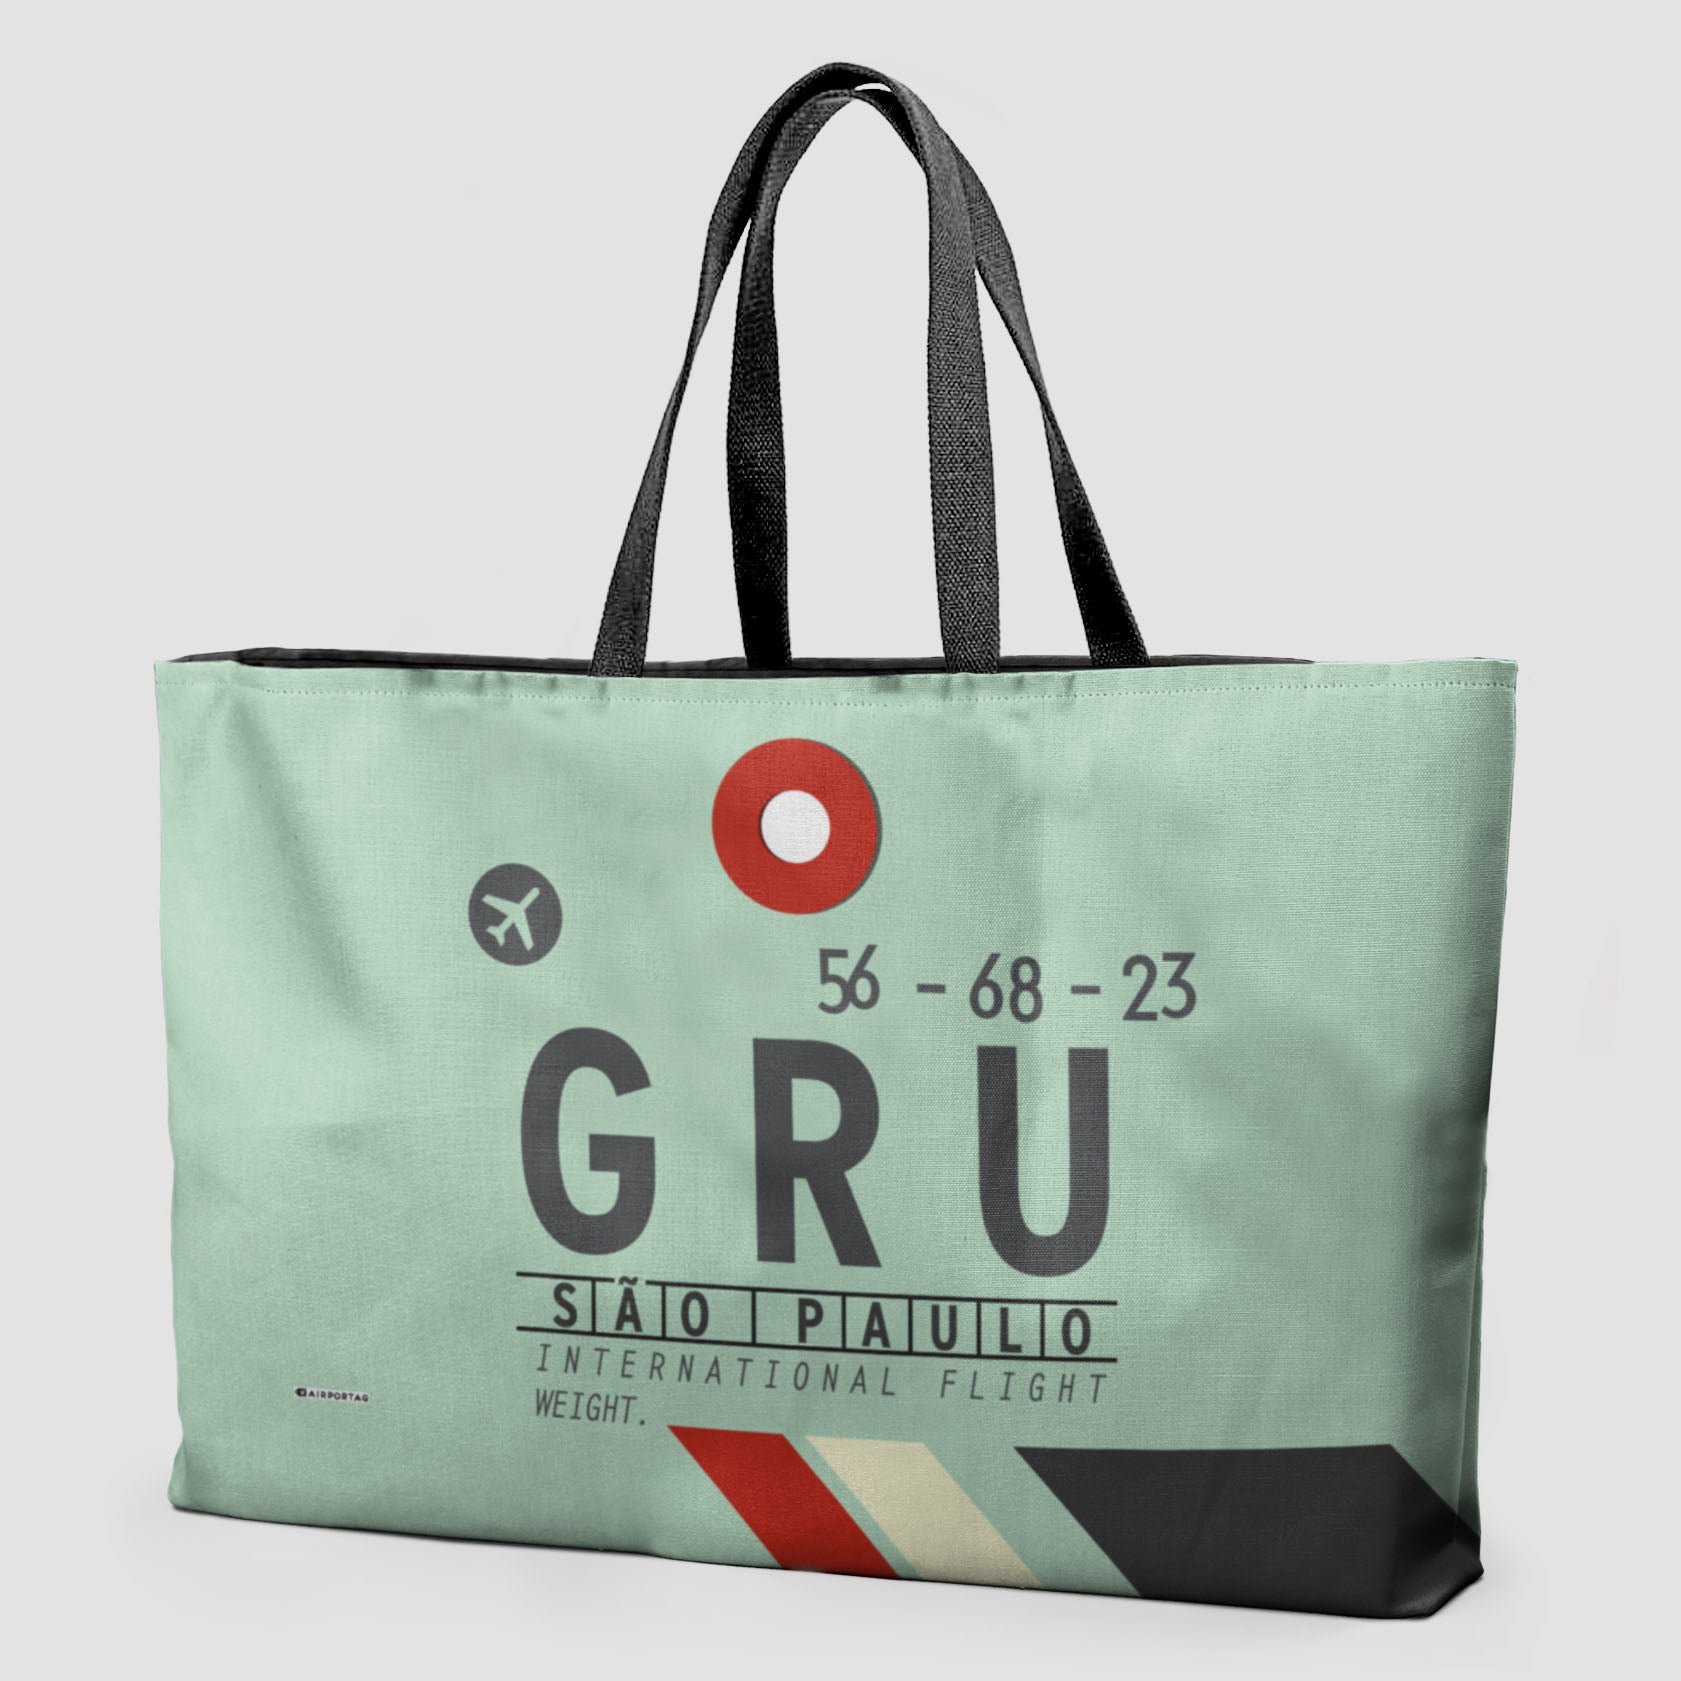 GRU - Weekender Bag - Airportag